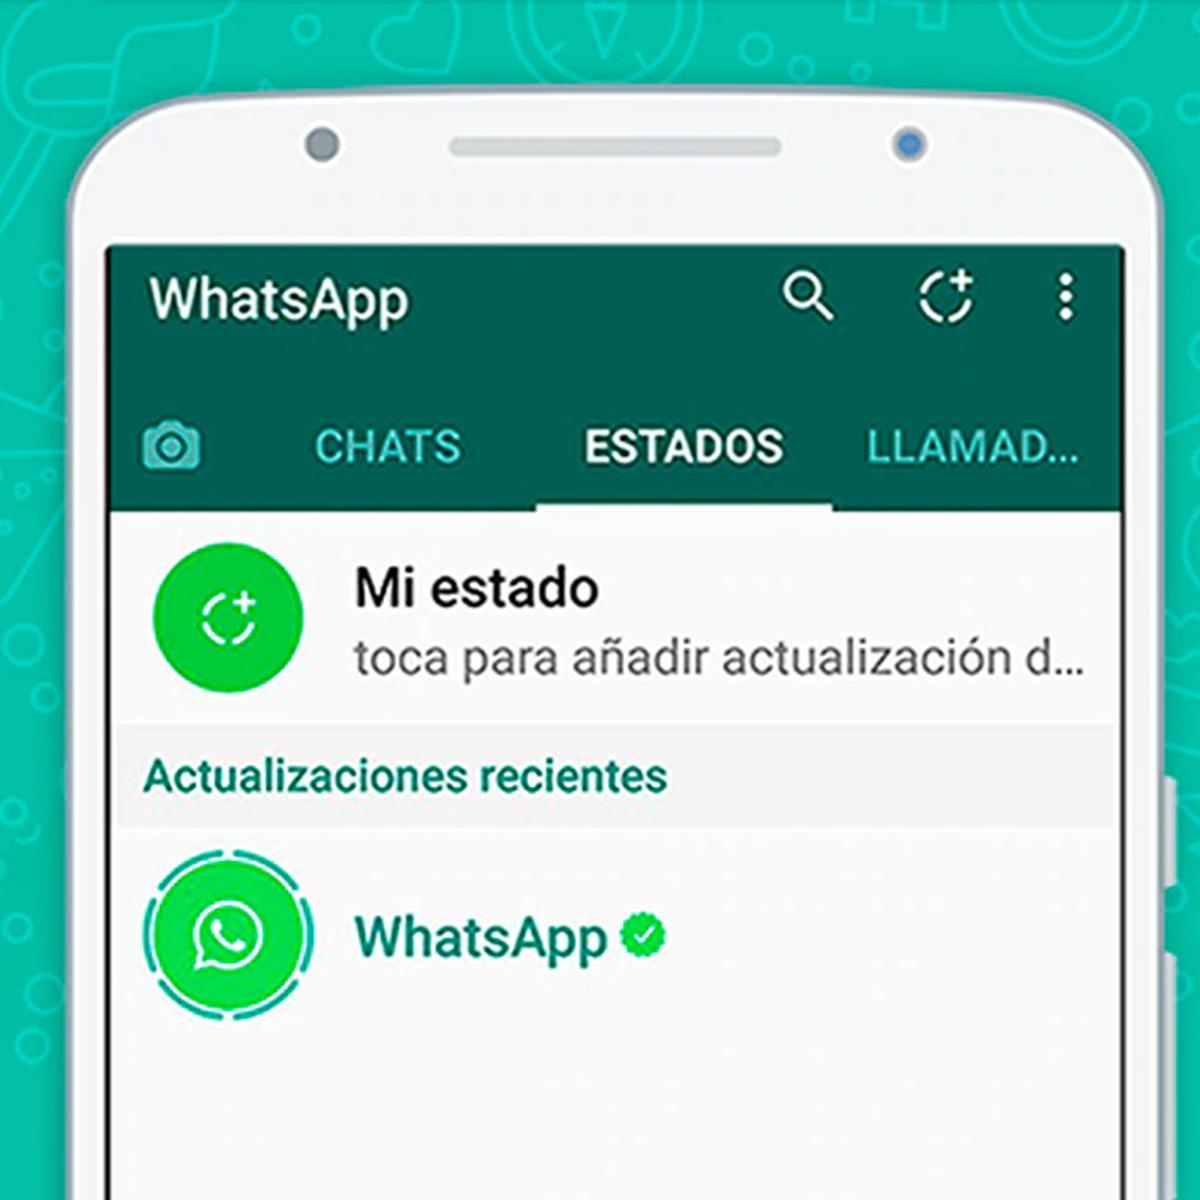 Las actualizaciones de estado de WhatsApp podrían aparecer pronto dentro de la lista de chats - 3 - mayo 19, 2022